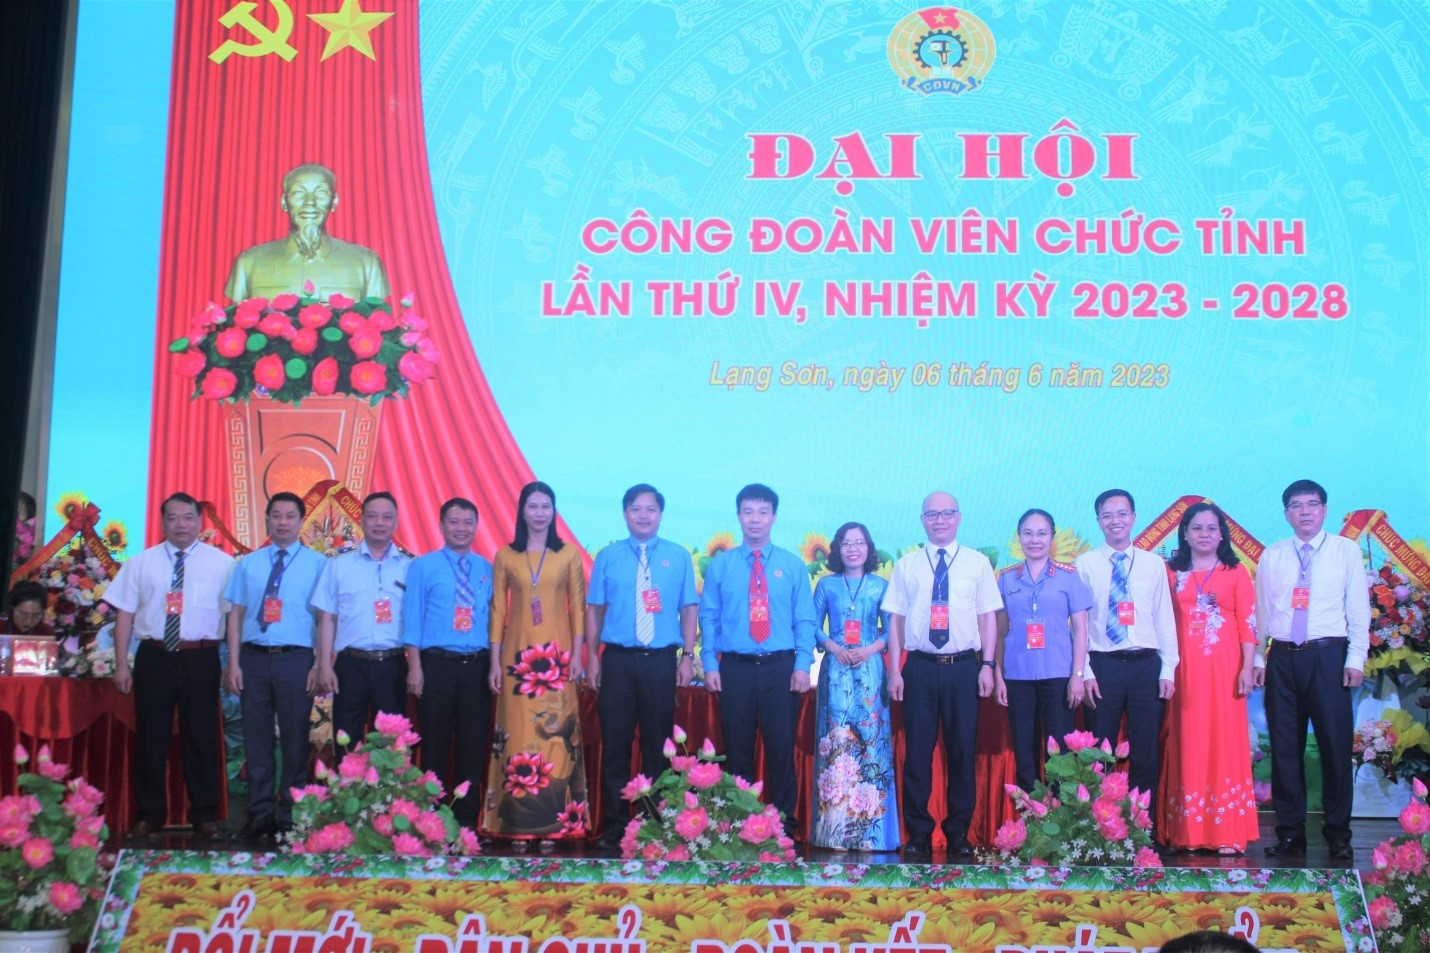 Công đoàn Viên chức tỉnh Lạng Sơn tổ chức thành công Đại hội lần thứ IV, nhiệm kỳ 2023-2028